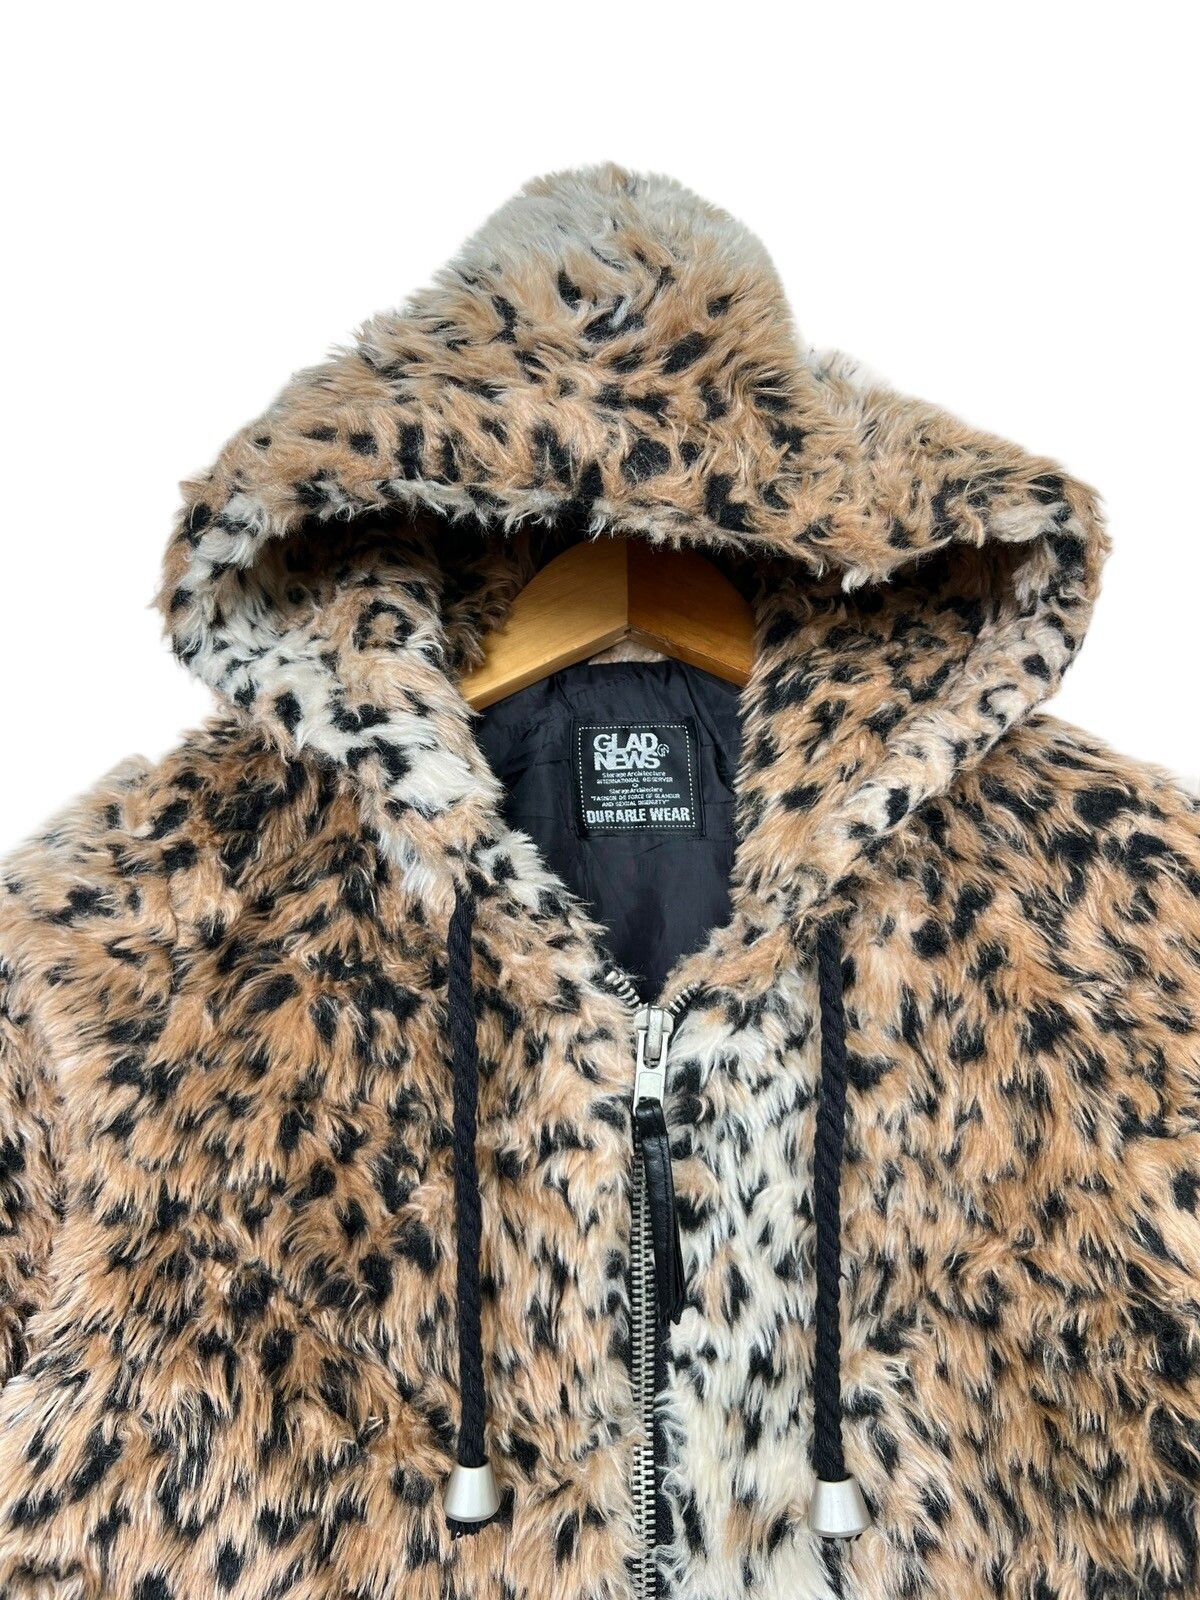 Japanese Brand - Glad News Leopard Fur Zip Up Hoodie - 4